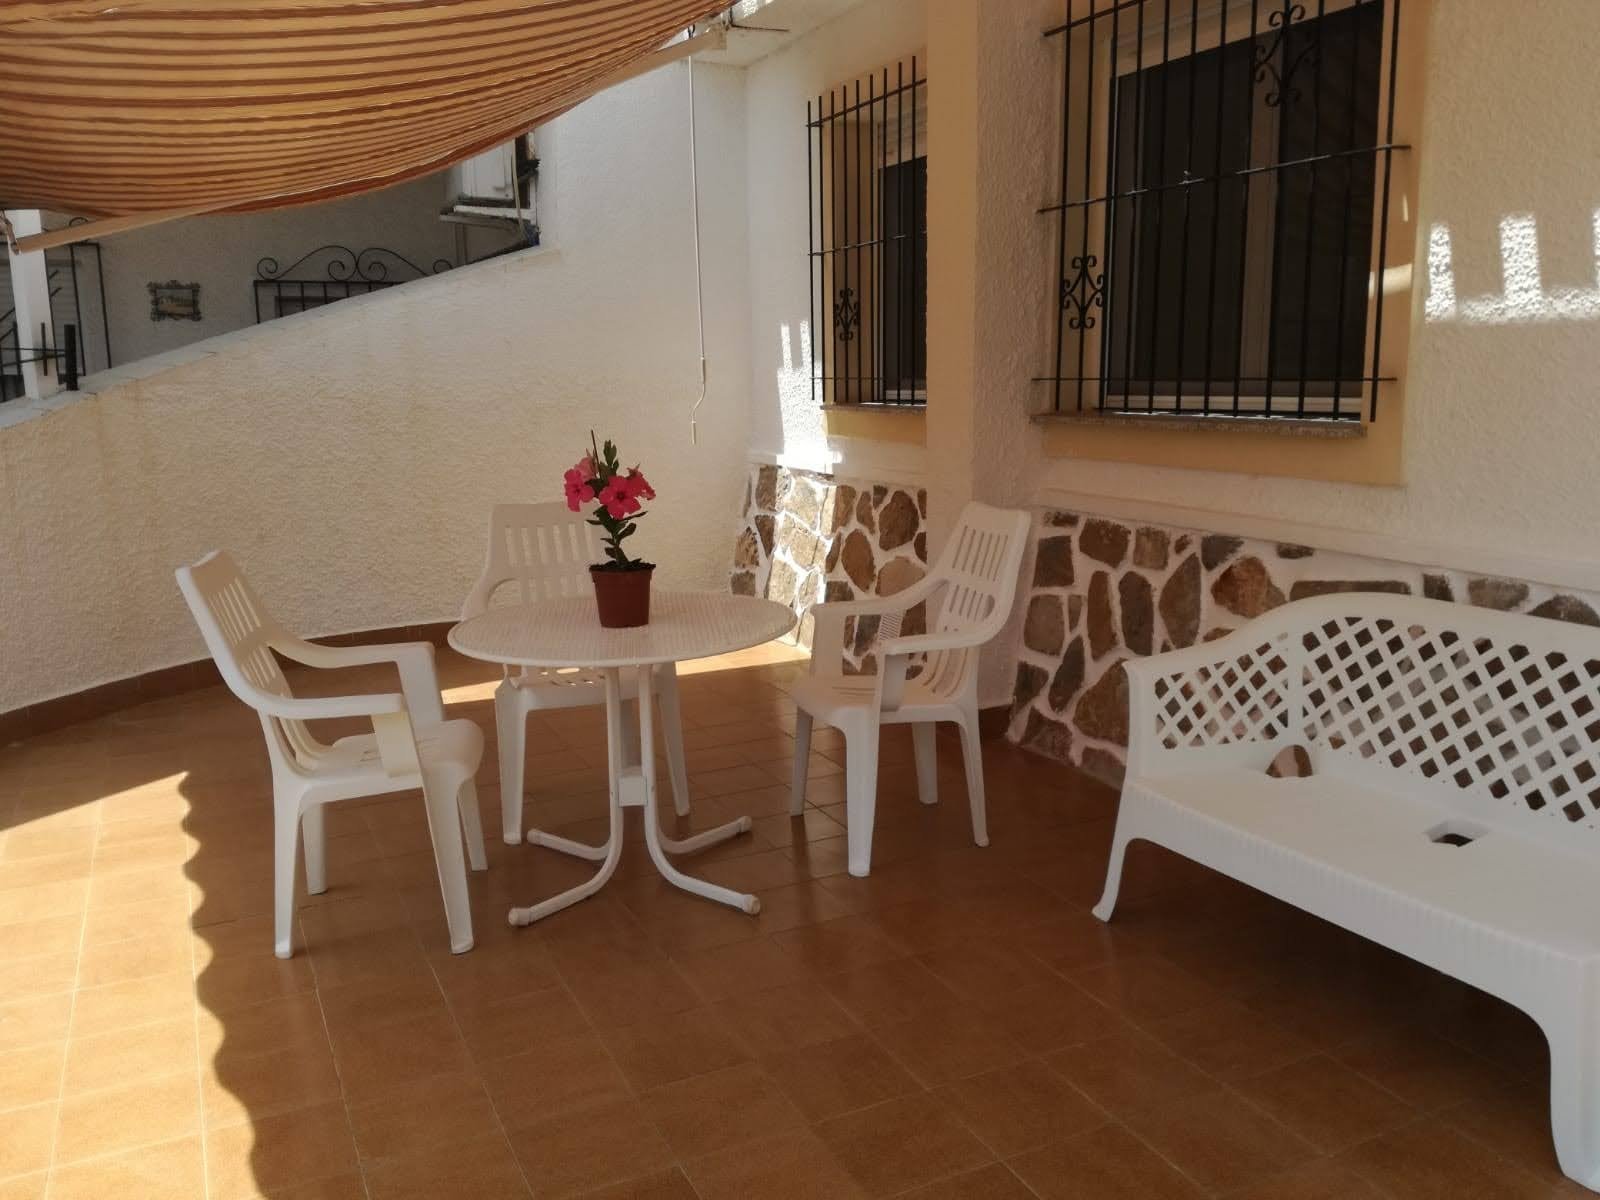 Casa Adosada en venta en San Javier, Murcia